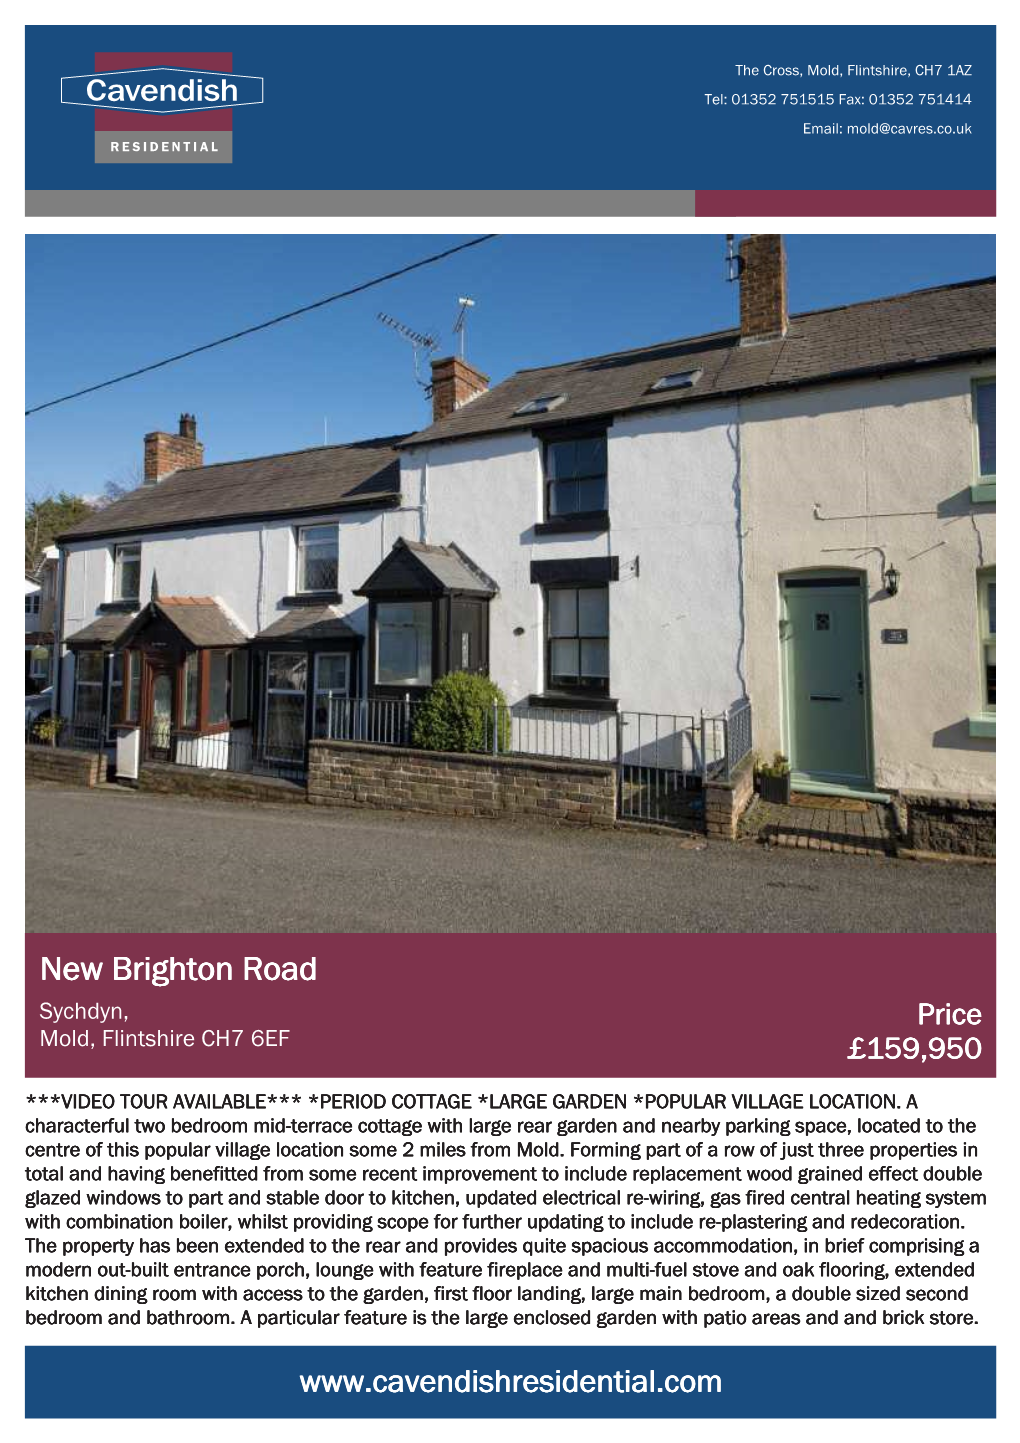 New Brighton Road Sychdyn, Price Mold, Flintshire CH7 6EF £159,950